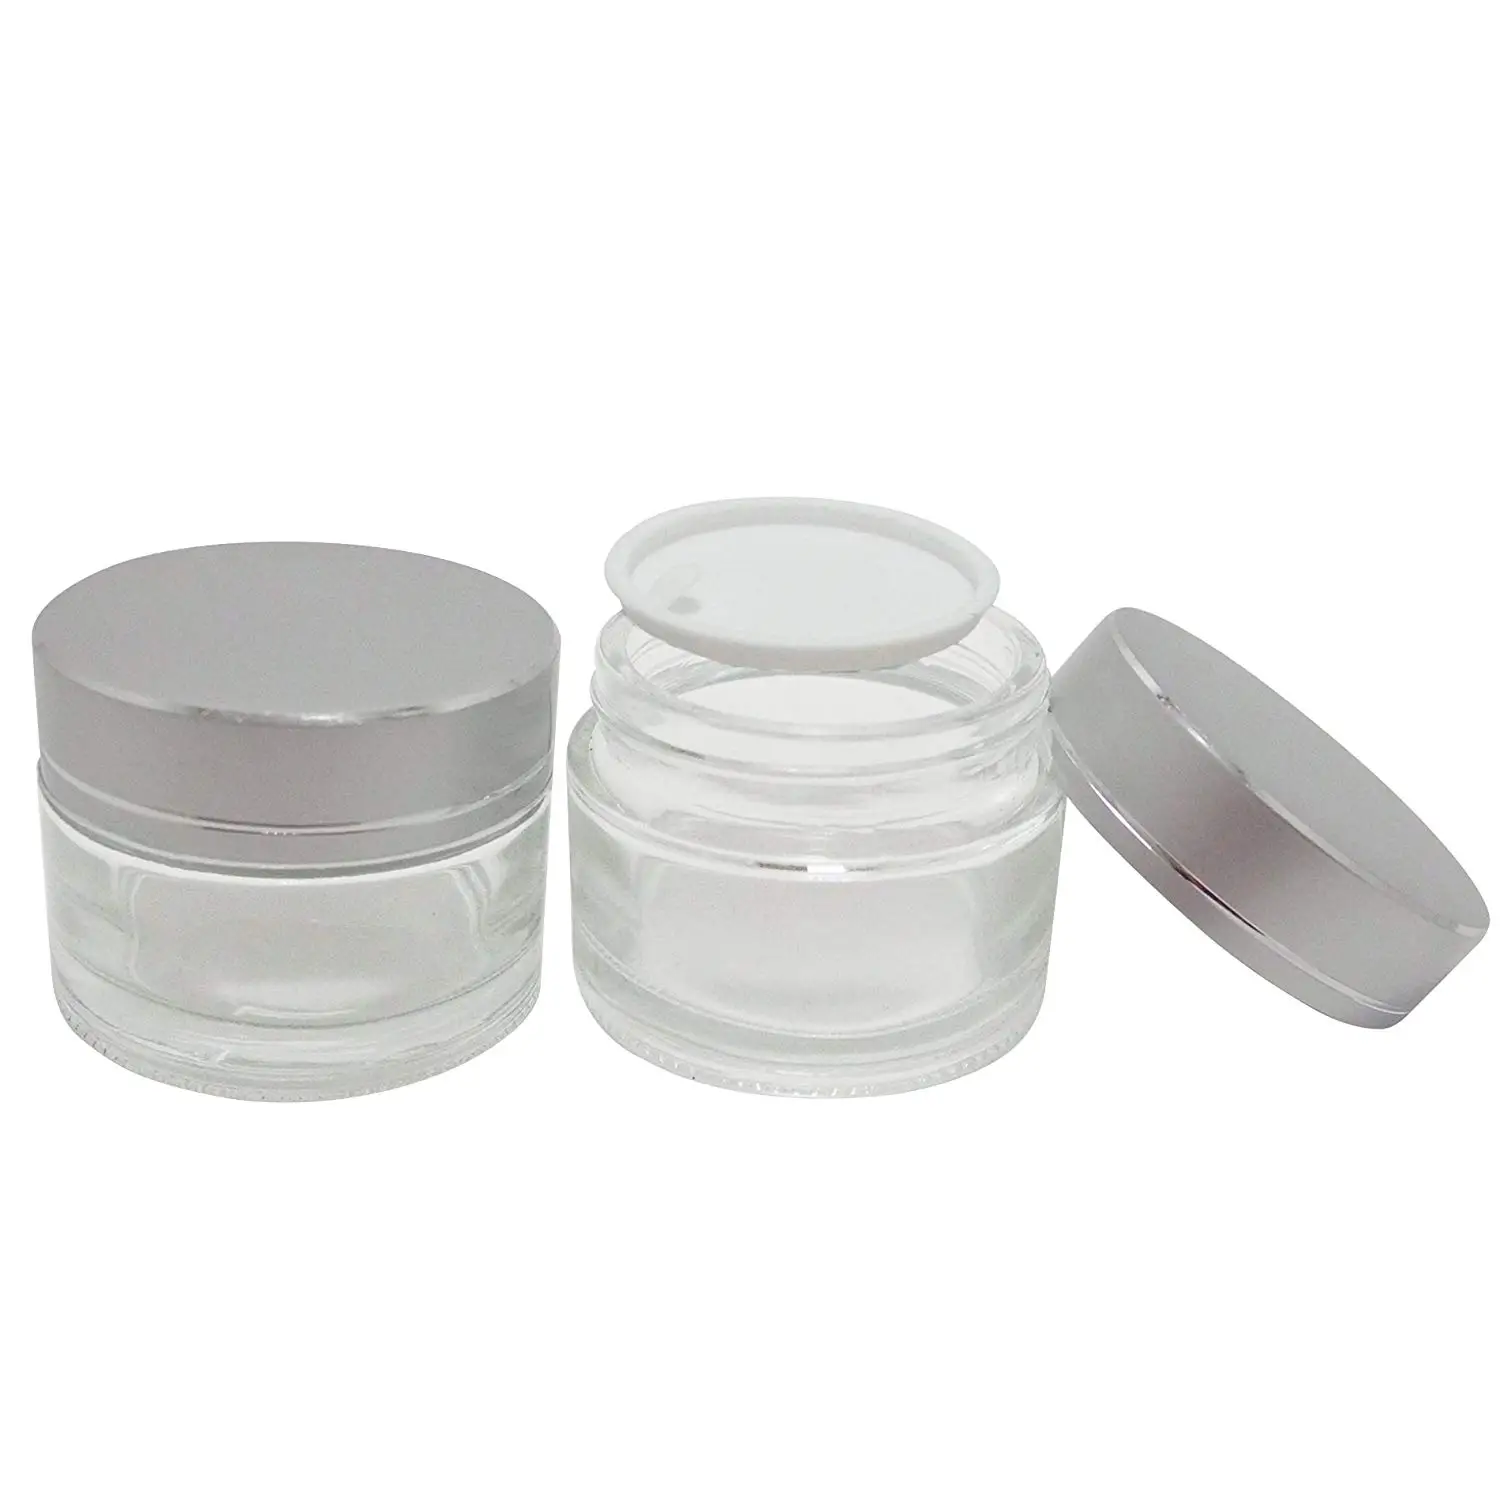 Cheap Mini Cream Glass Jar Find Mini Cream Glass Jar Deals On Line At